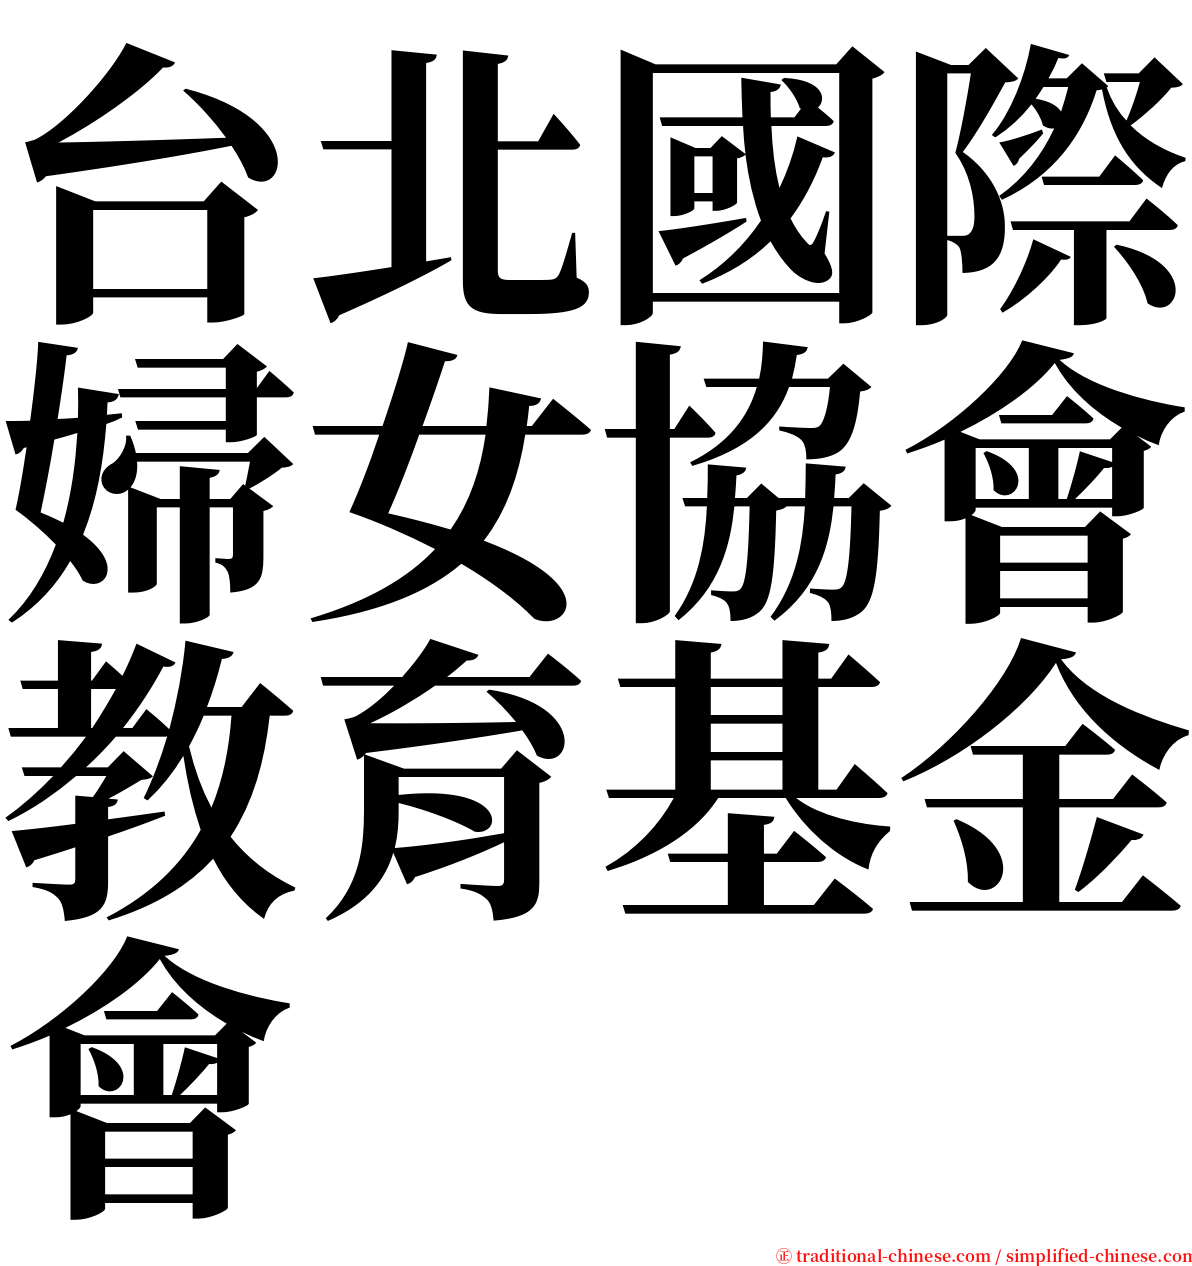 台北國際婦女協會教育基金會 serif font